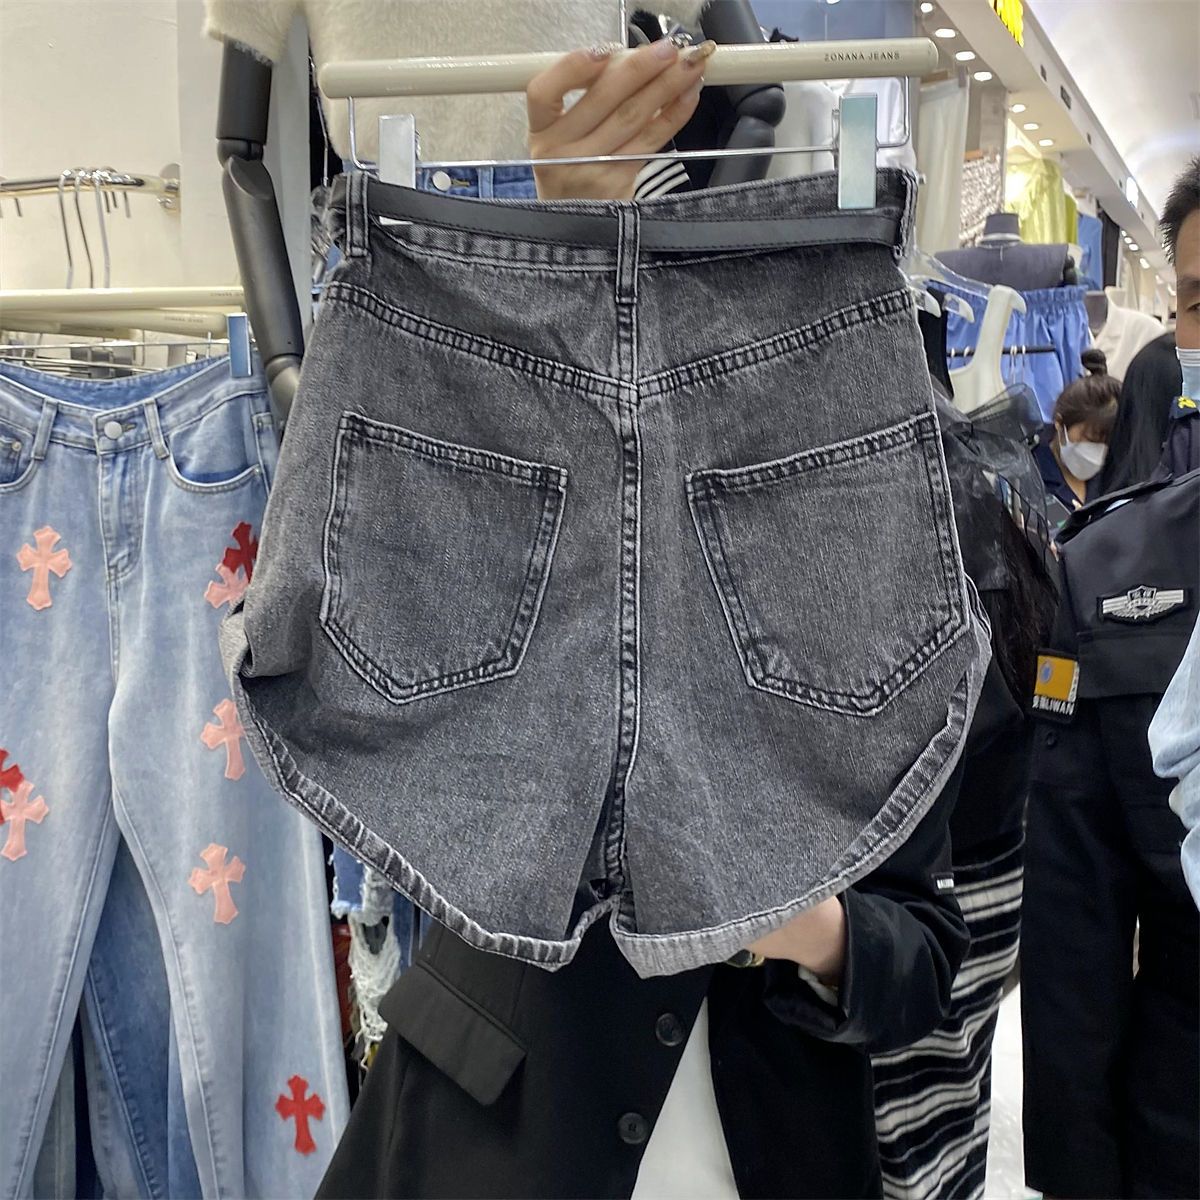 Large size fat mm denim shorts women's summer design sense high waist thin temperament wide leg pants straight a word hot pants